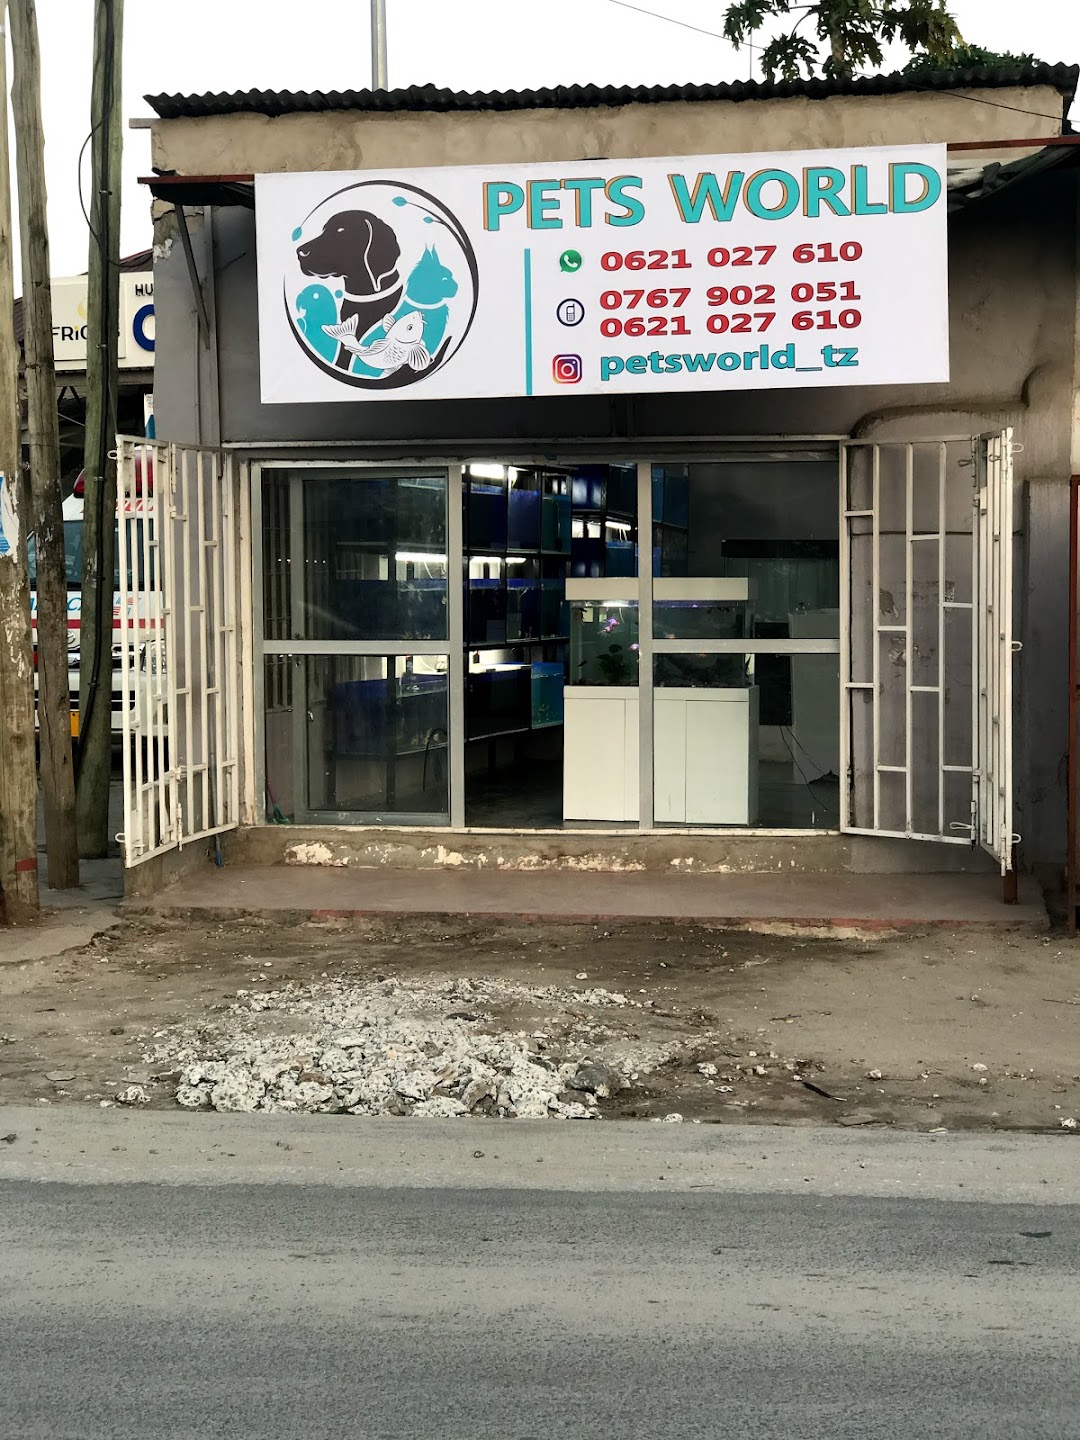 Pets world